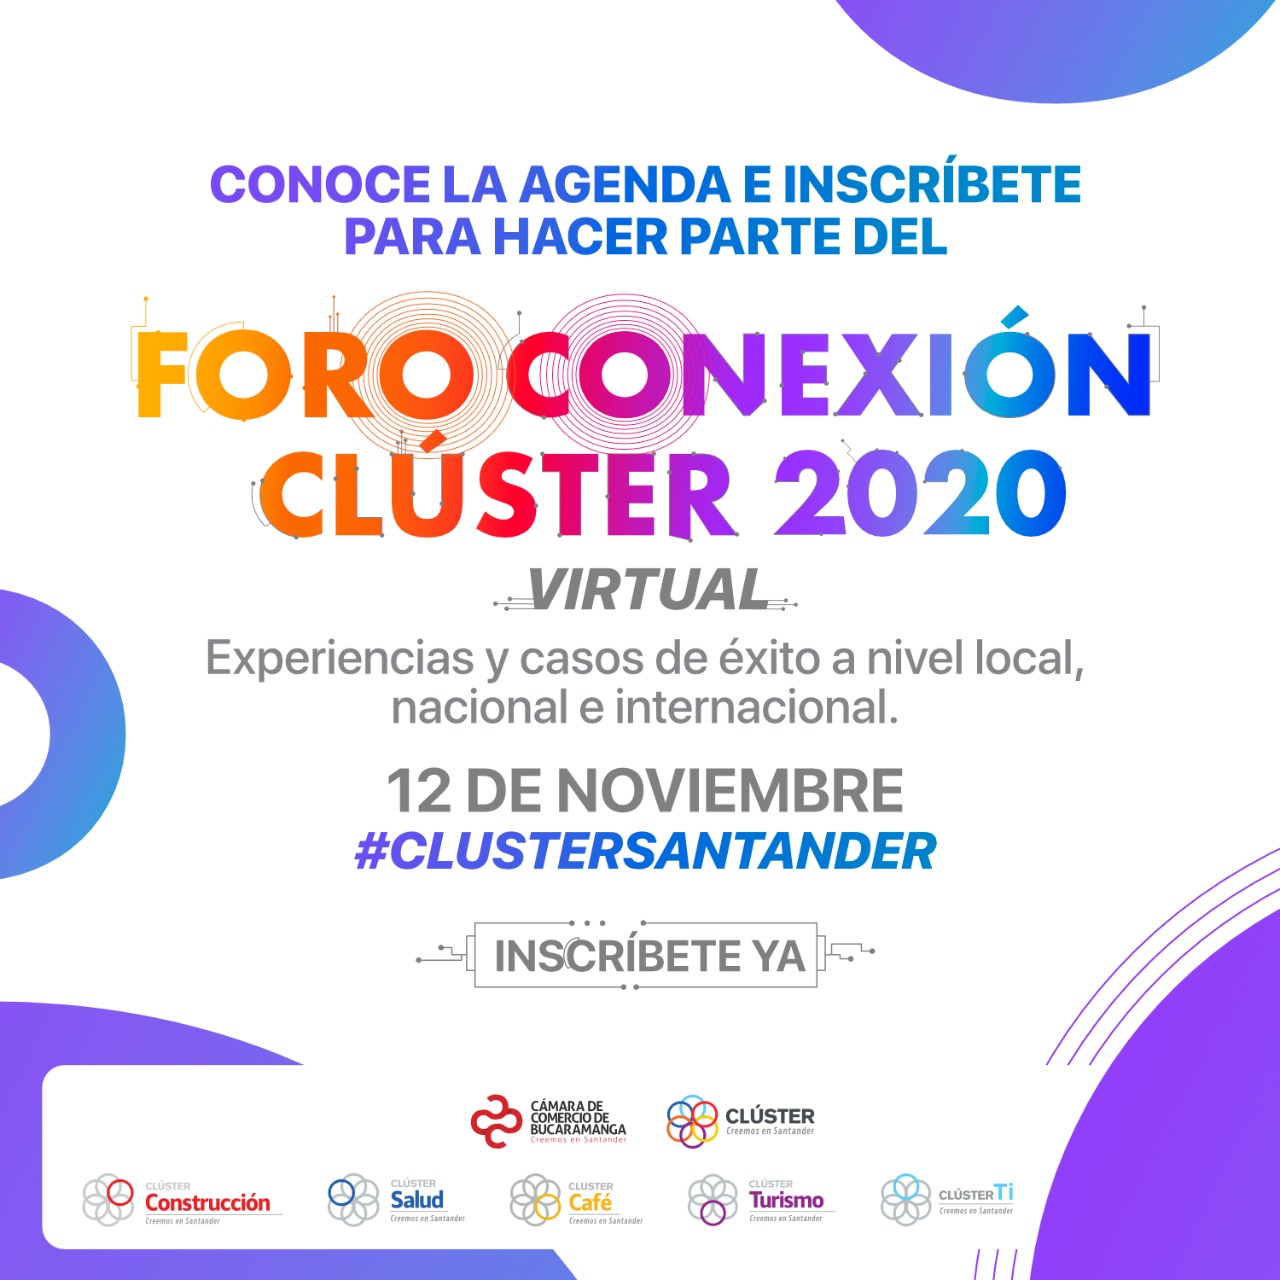 La Cámara de Comercio de Bucaramanga reunirá a los empresarios regionales en el primer Foro Conexión Clúster 2020